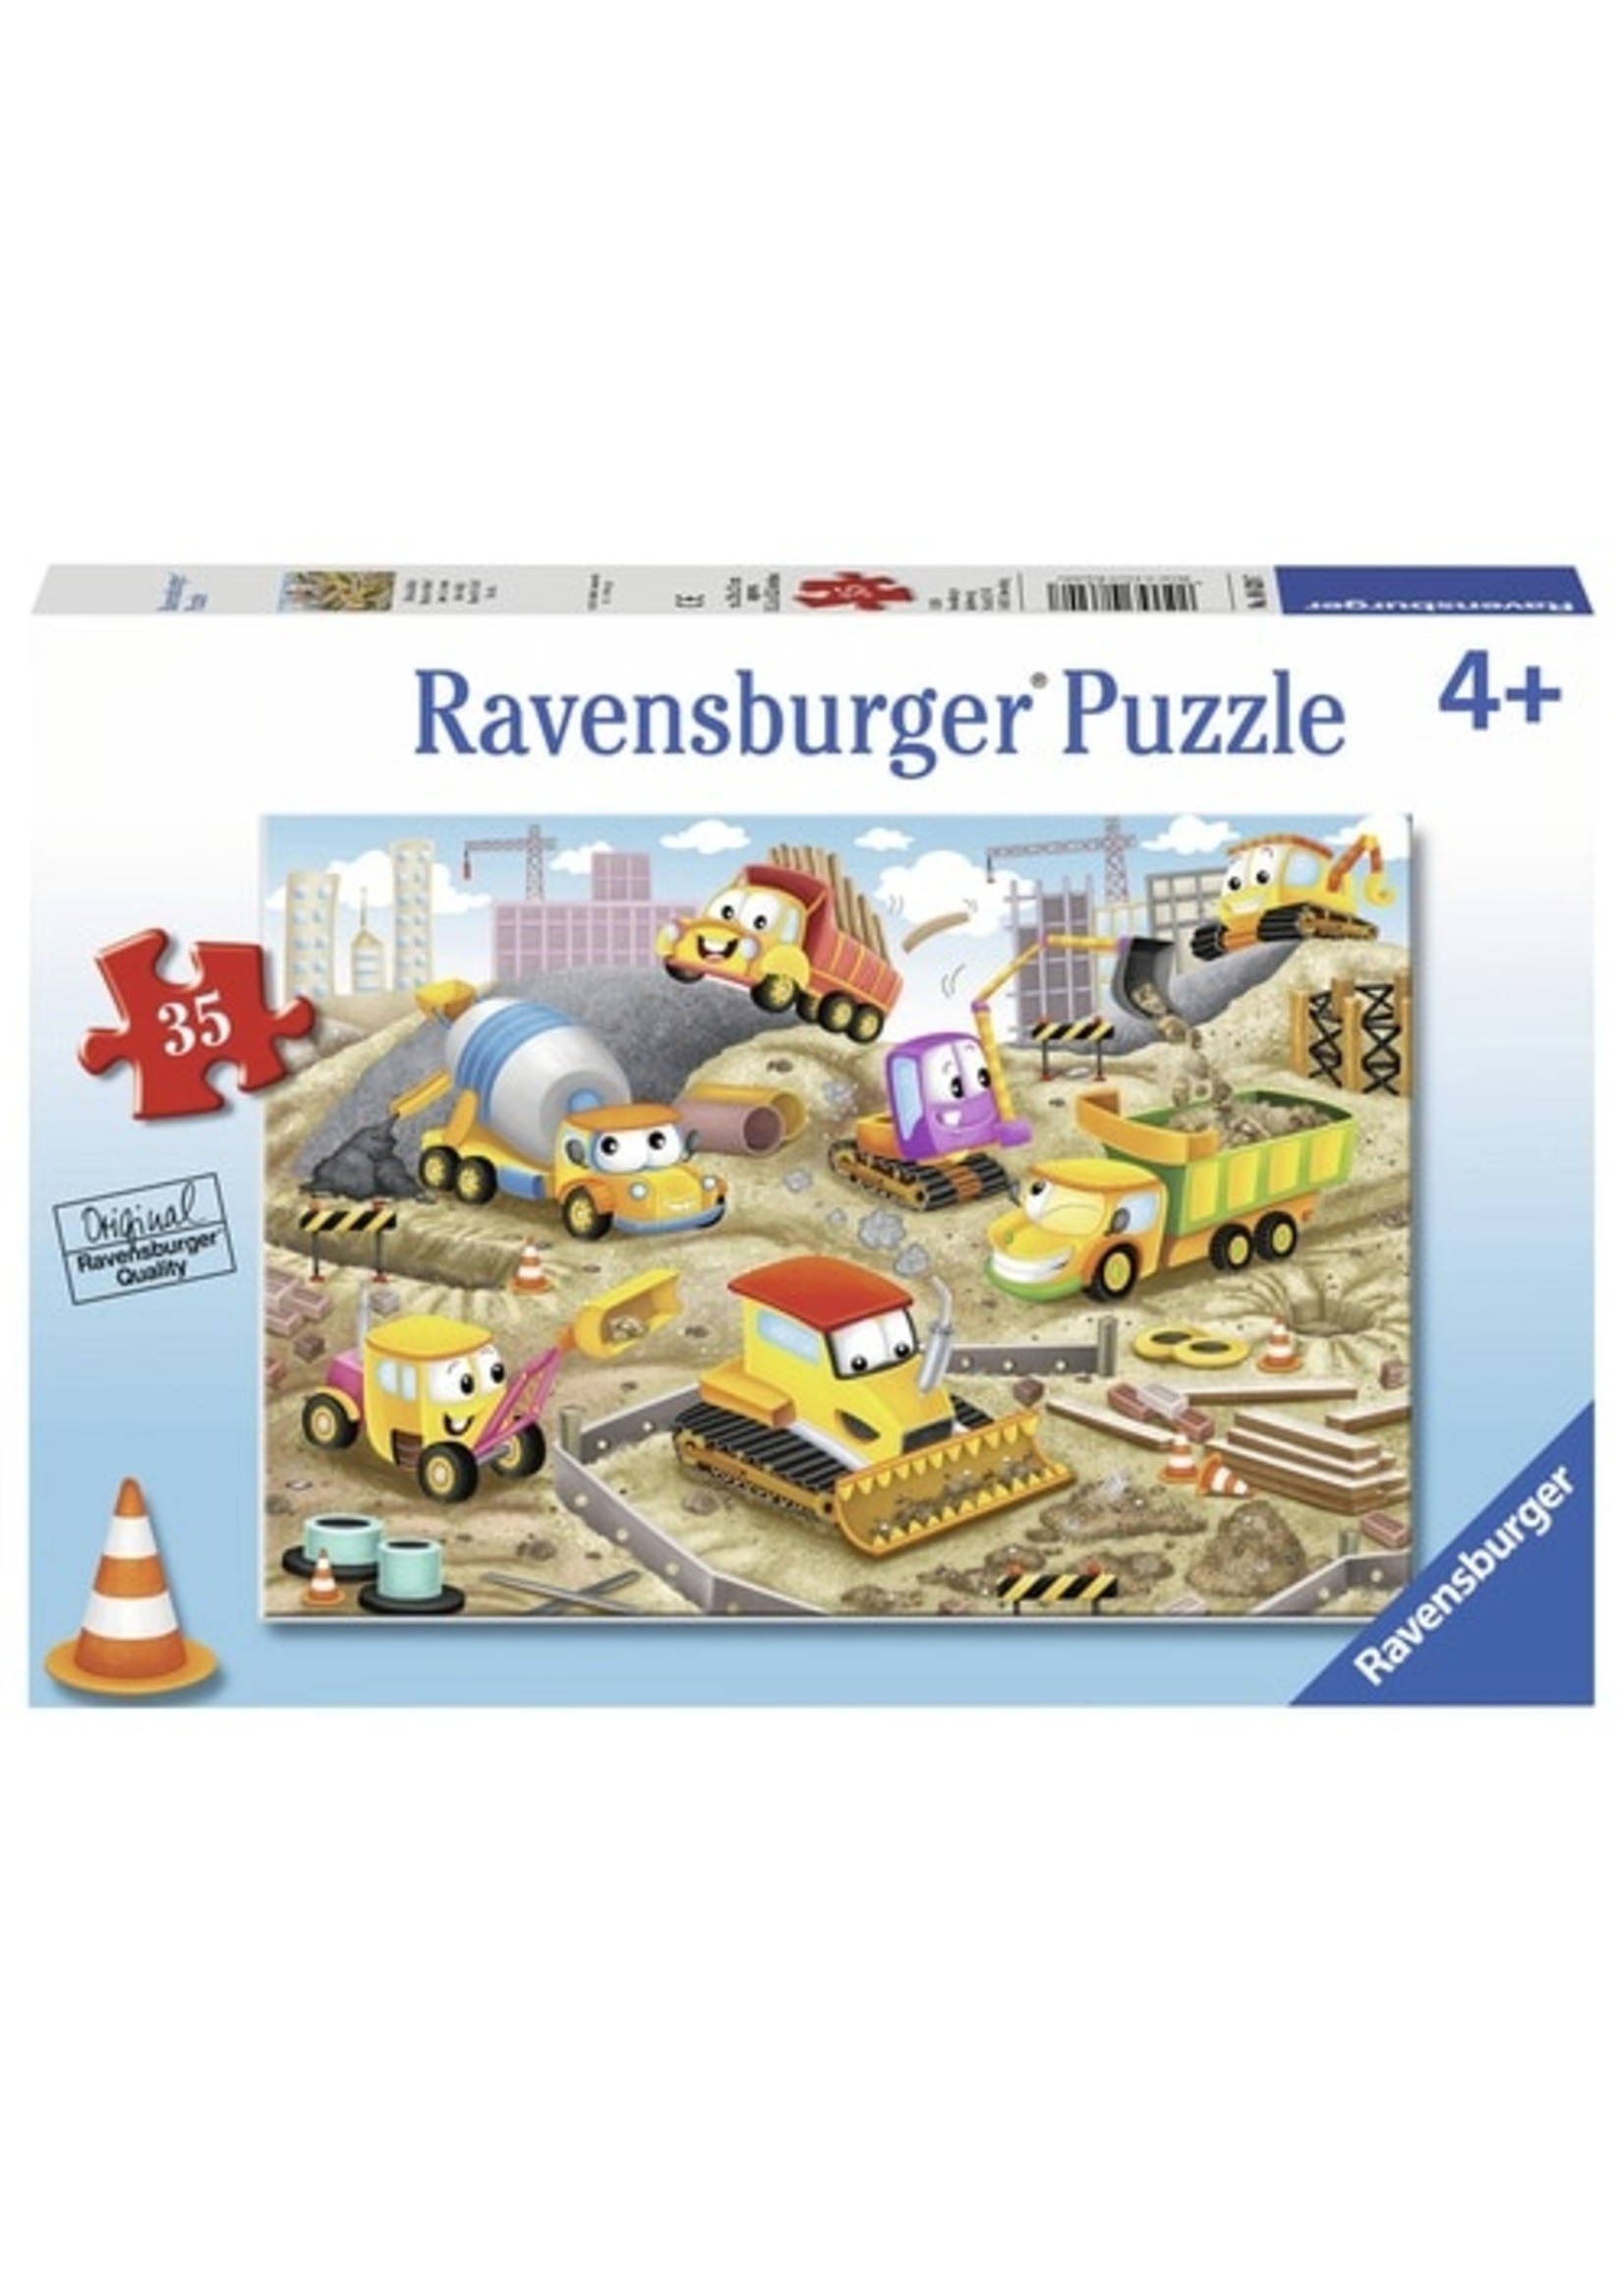 Ravensburger "Raise the Roof" 35 Piece Puzzle